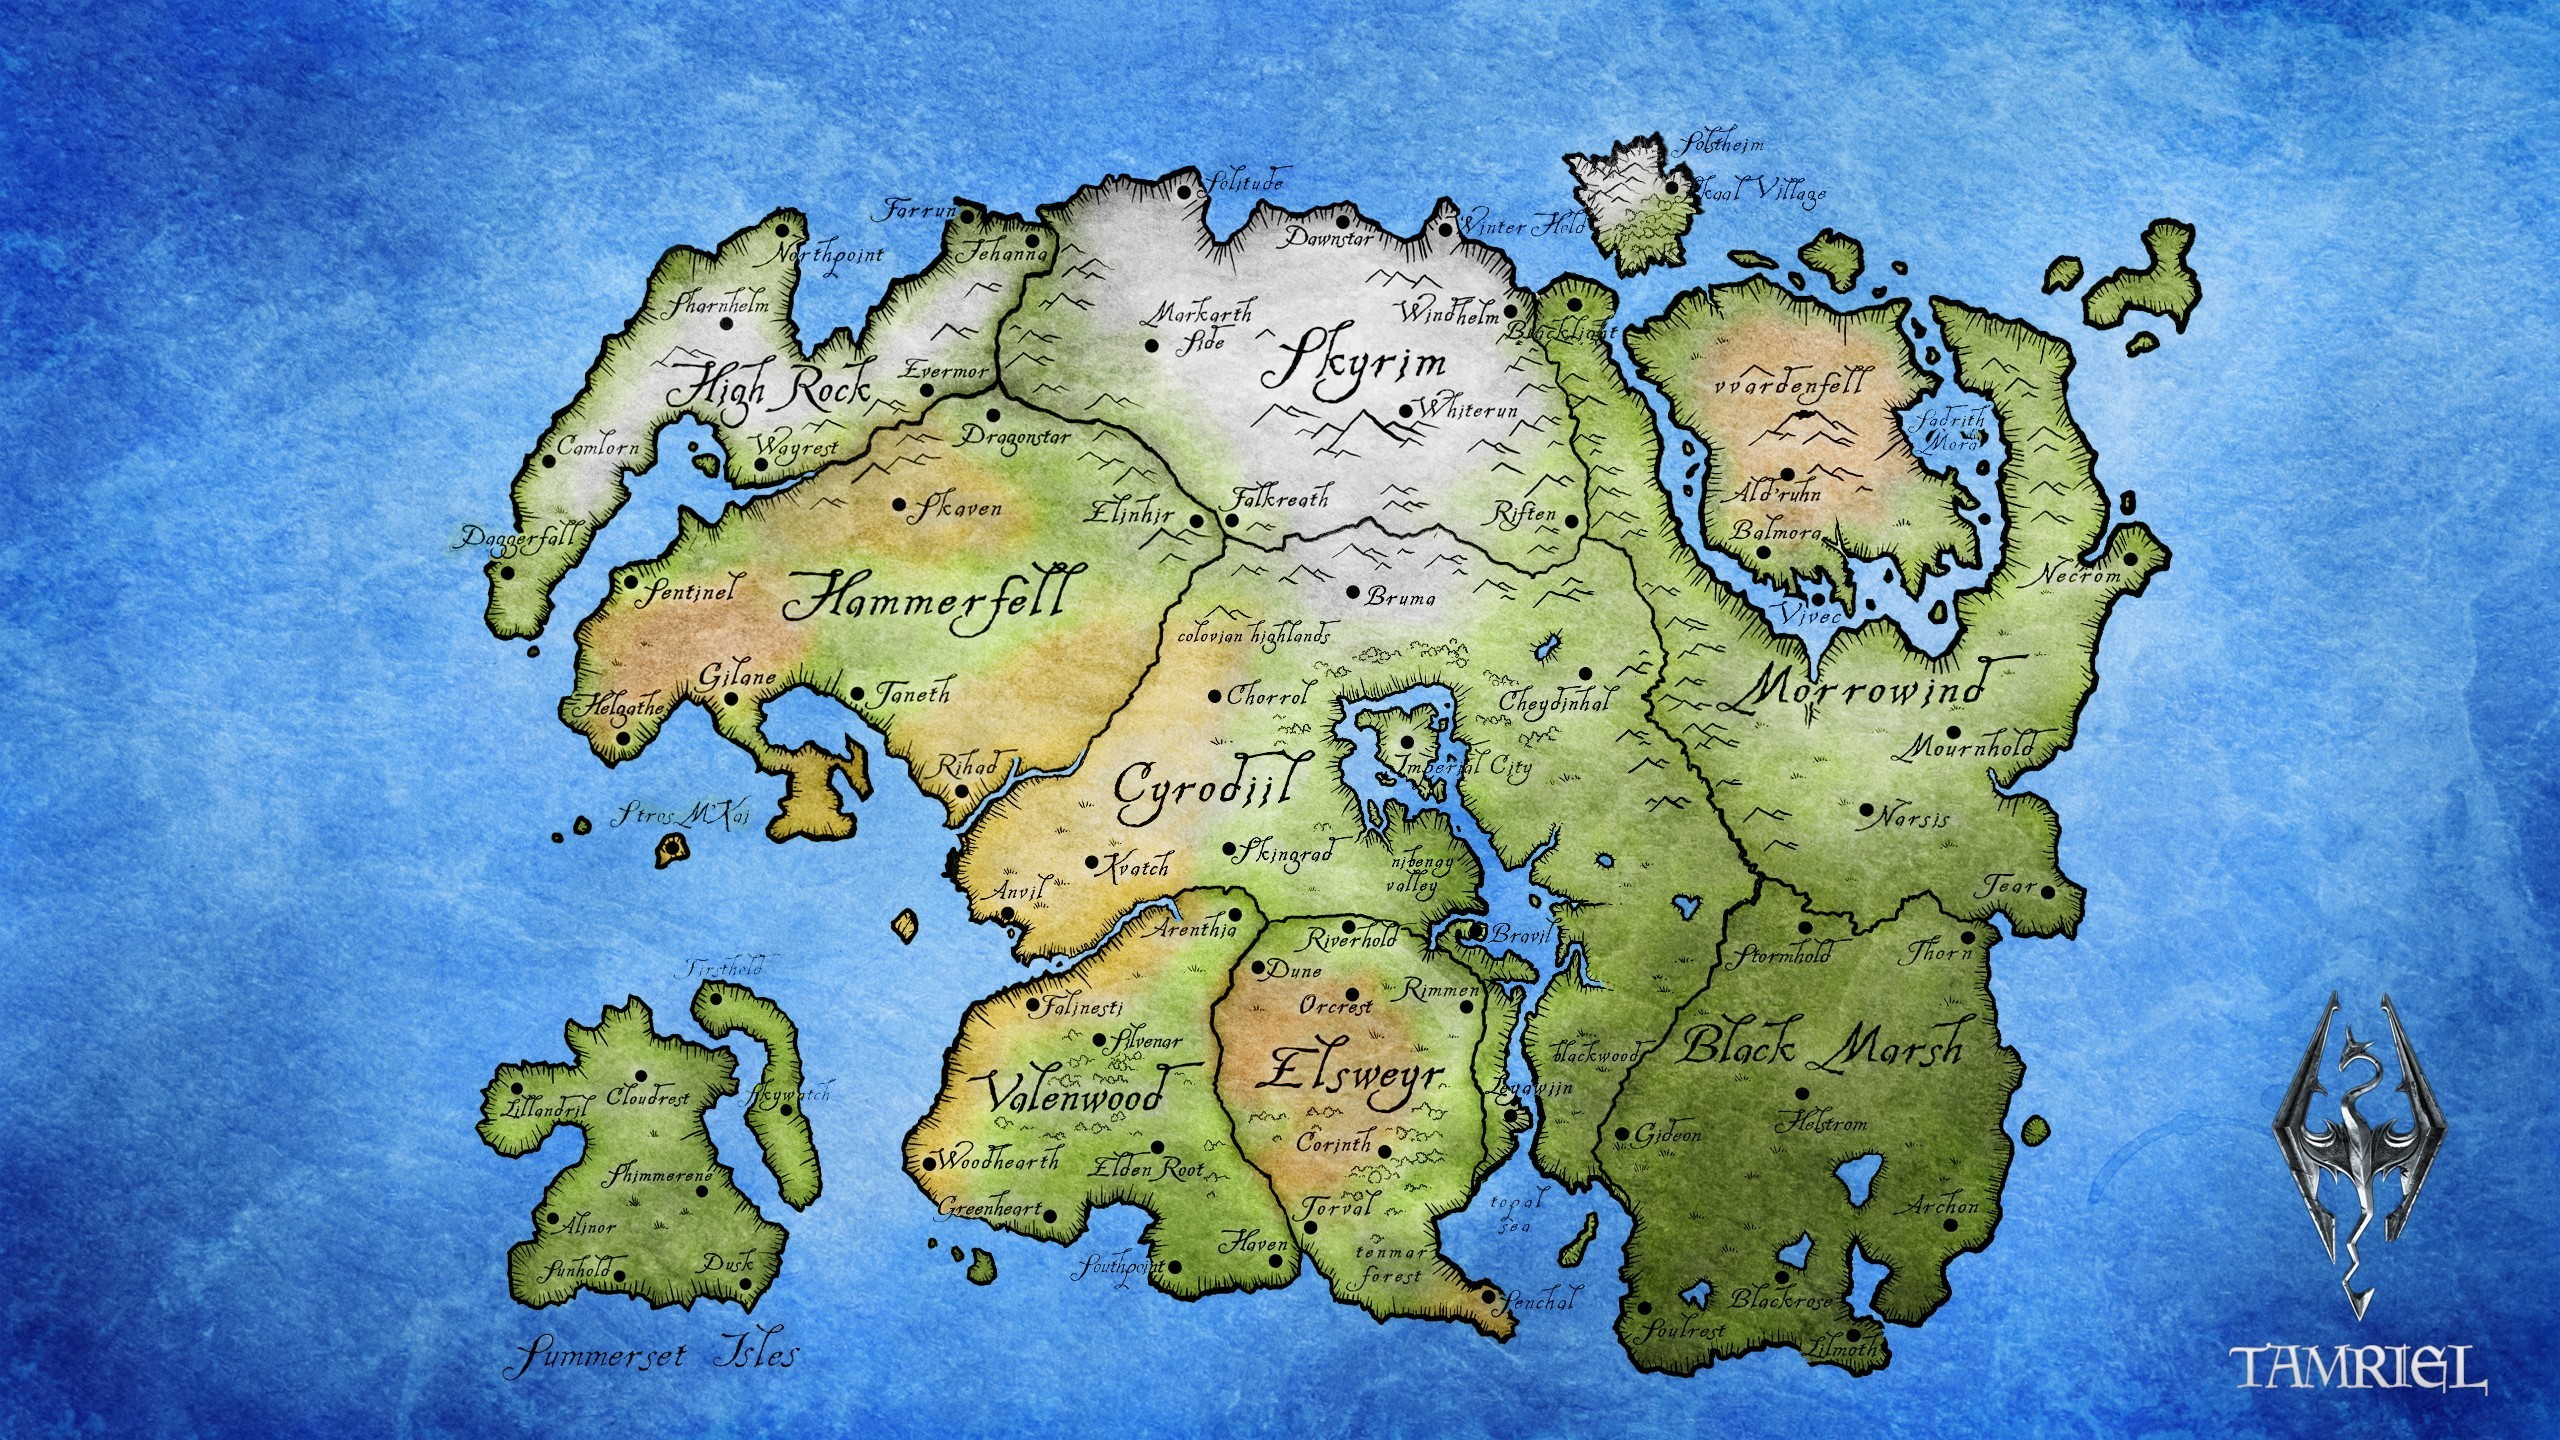 Elder Scrolls, Map, The Elder Scrolls V: Skyrim, The Elder Scrolls IV: Oblivion, The Elder Scrolls III: Morrowind, Tamriel Wallpaper HD / Desktop and Mobile Background